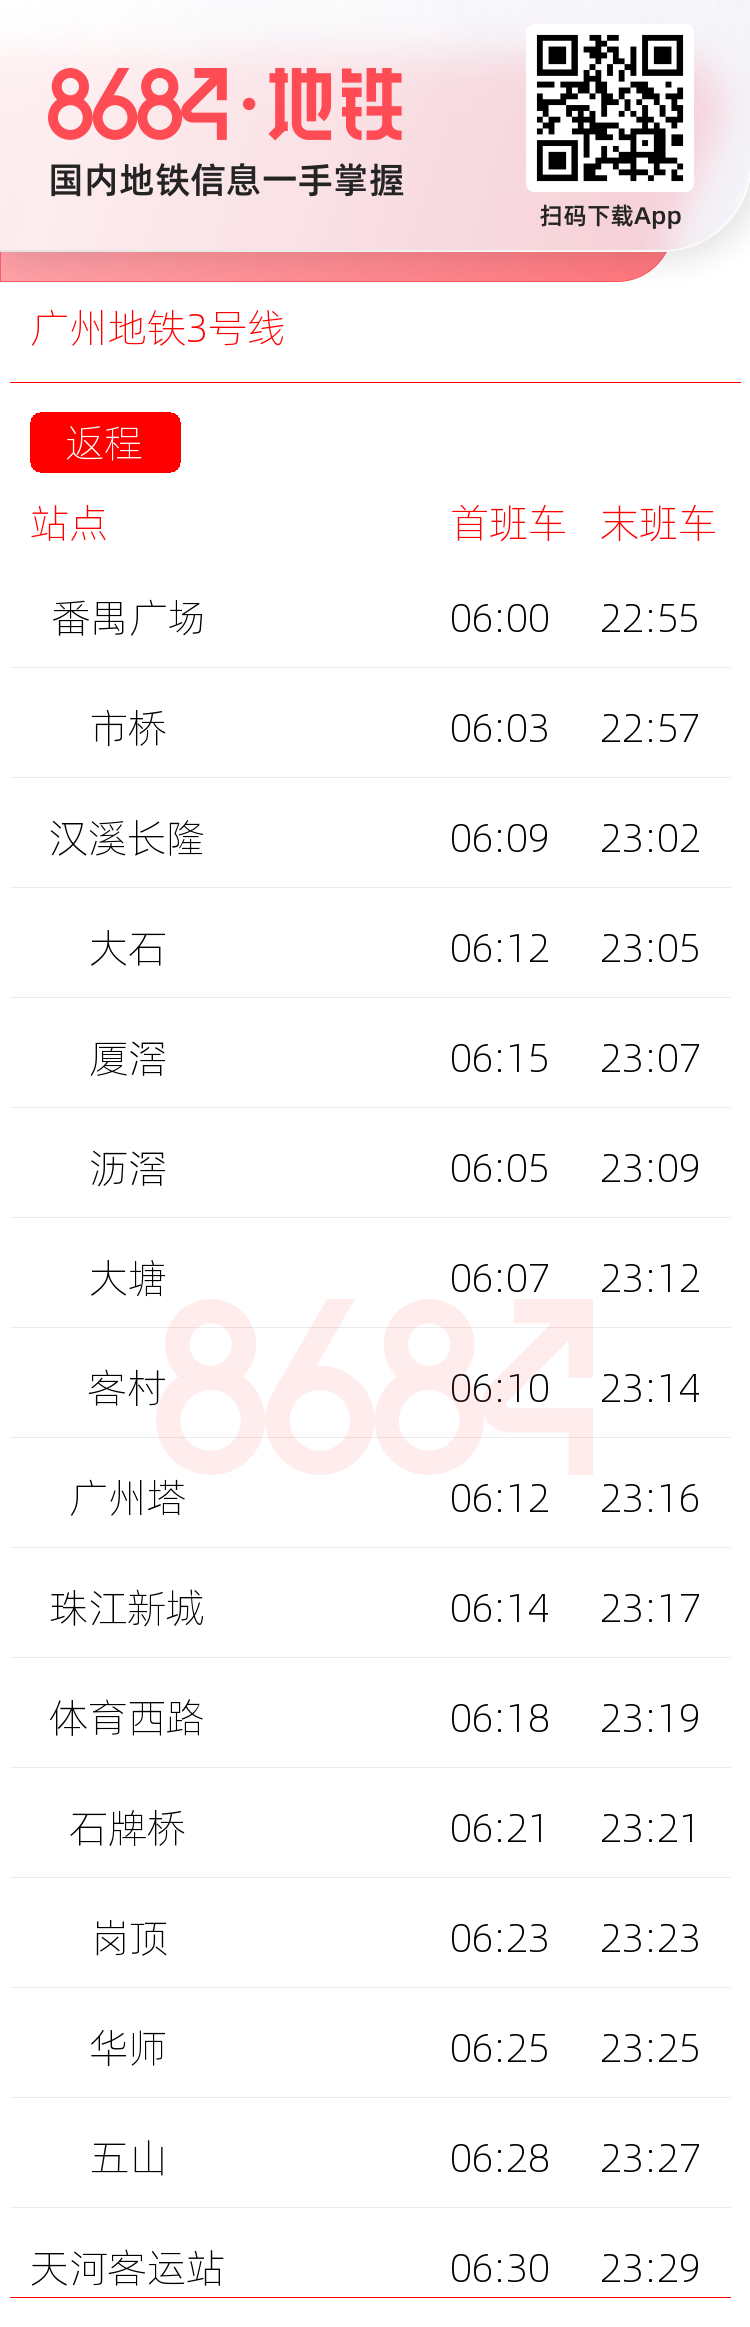 广州地铁3号线运营时间表